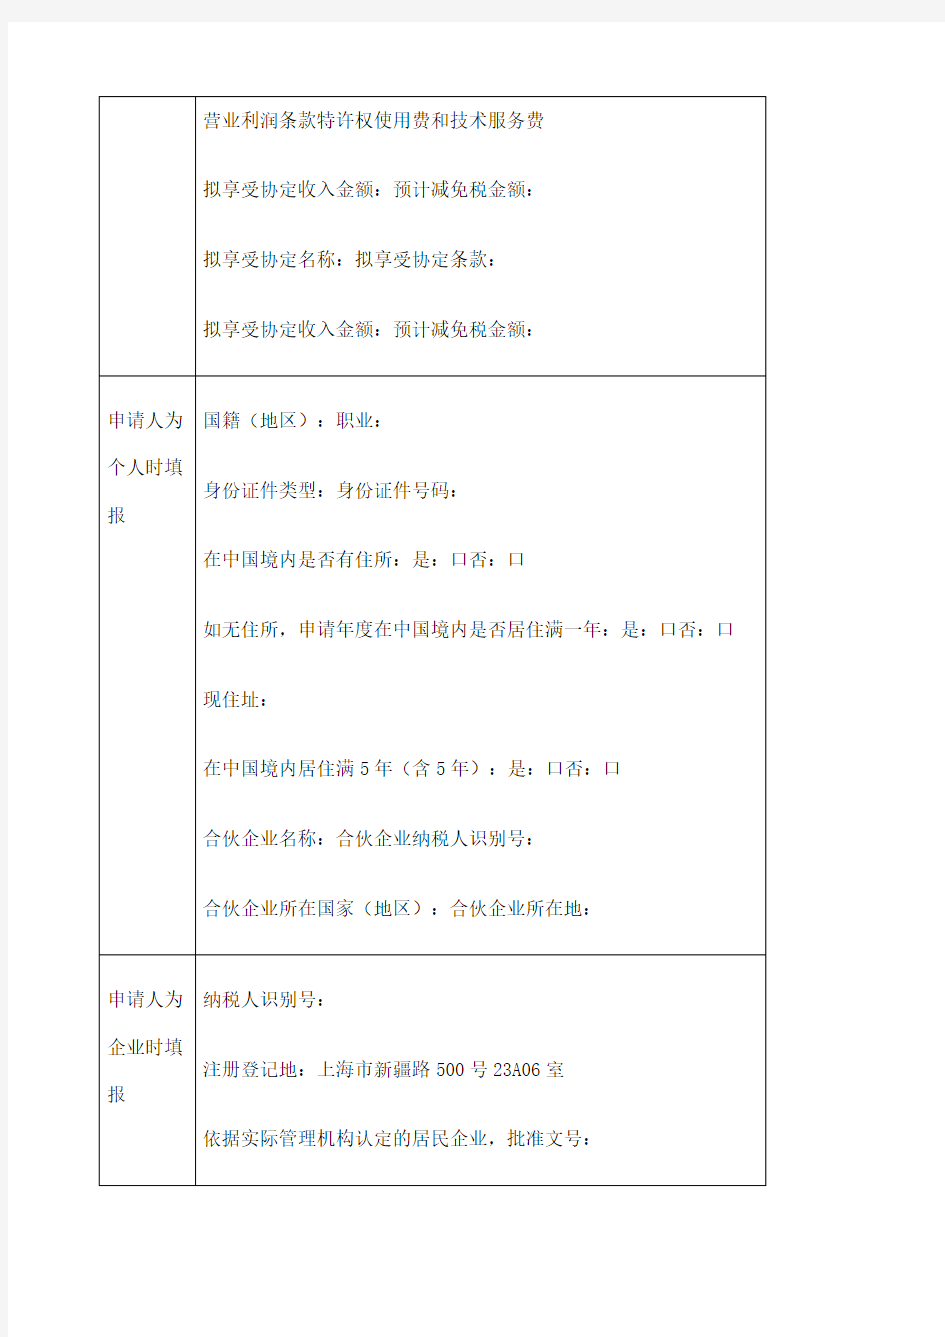 《中国税收居民身份证明》申请表填写